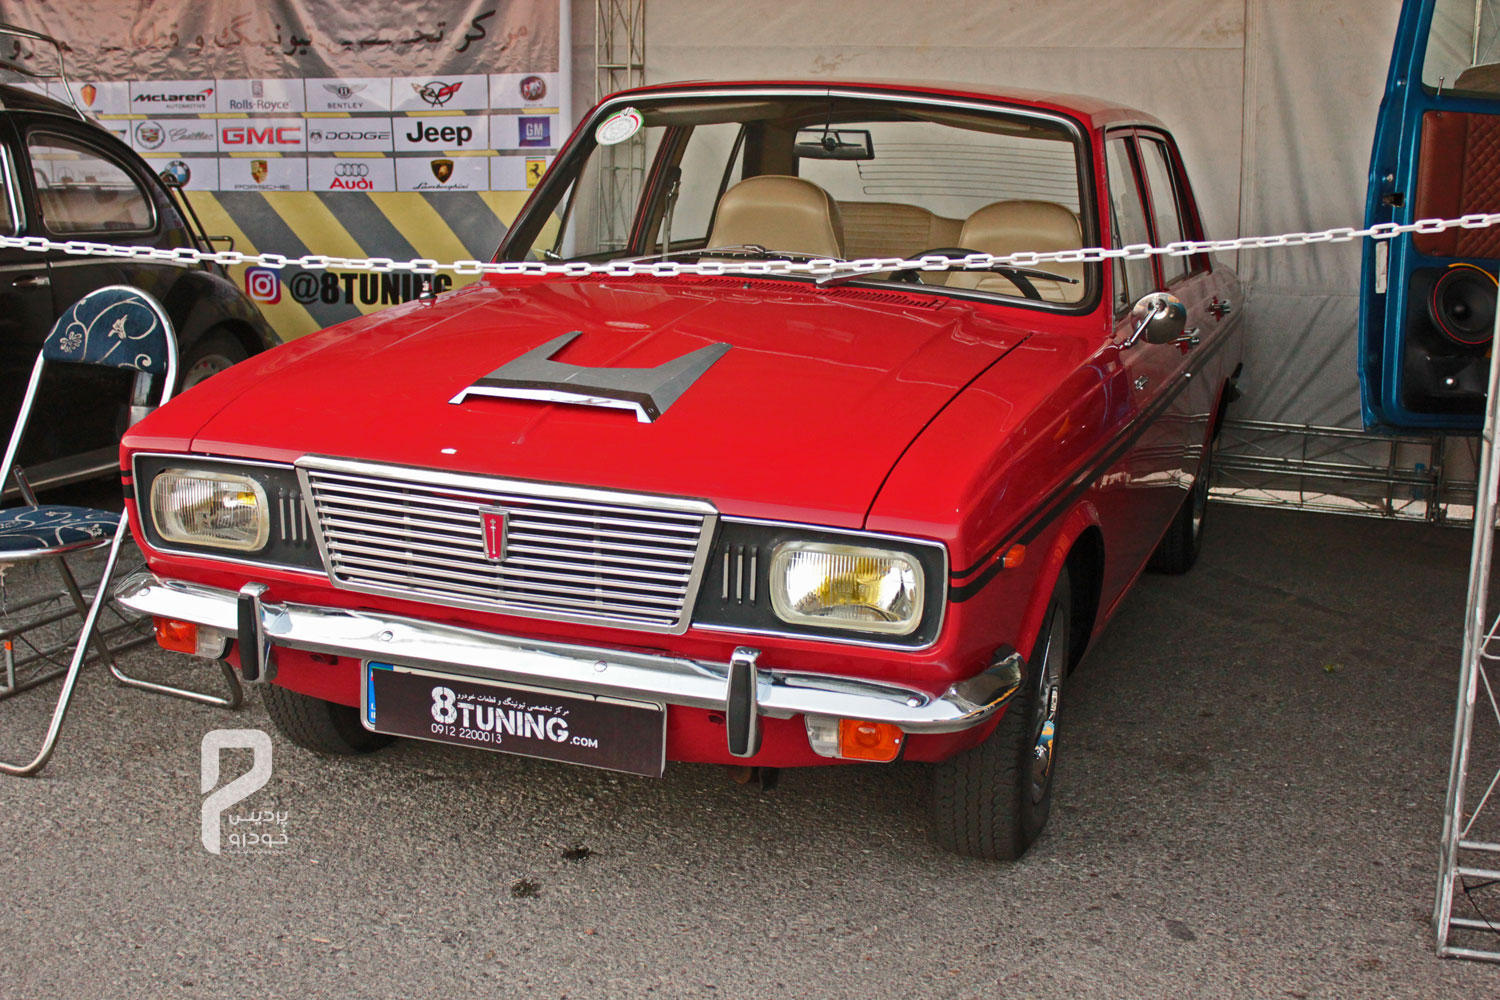 2-جشنواره خودروهای تیون شده و کلاسیک  در توچال برگزار شد